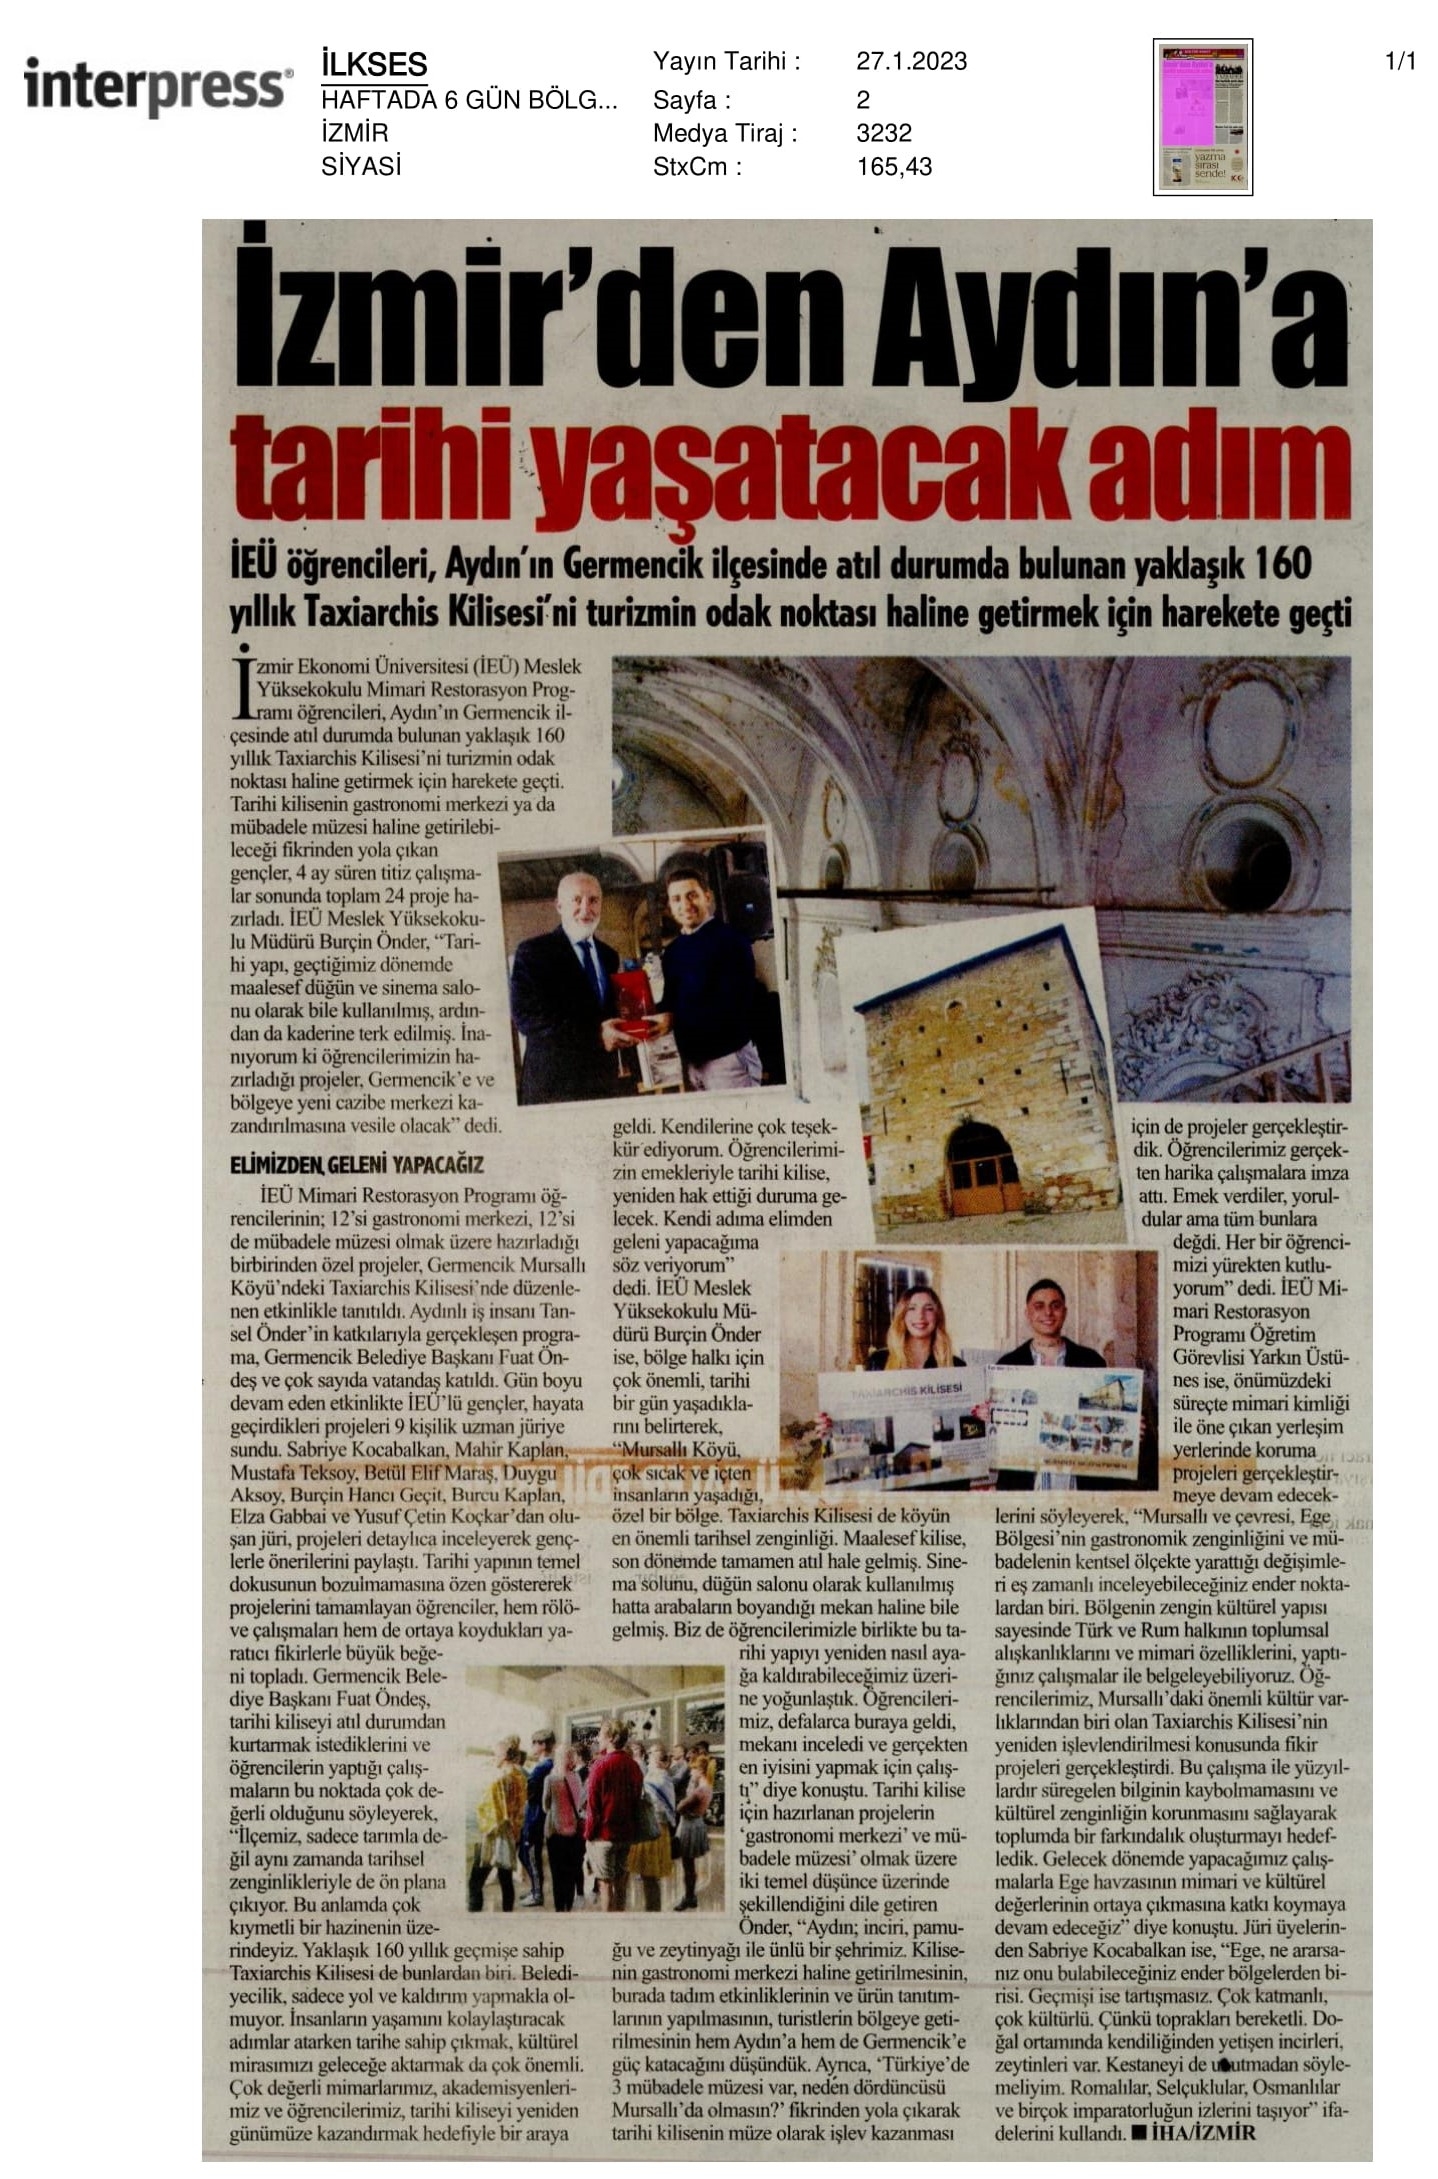 İzmir’den Aydın’a ‘Tarihi Yaşatacak’ 24 Proje